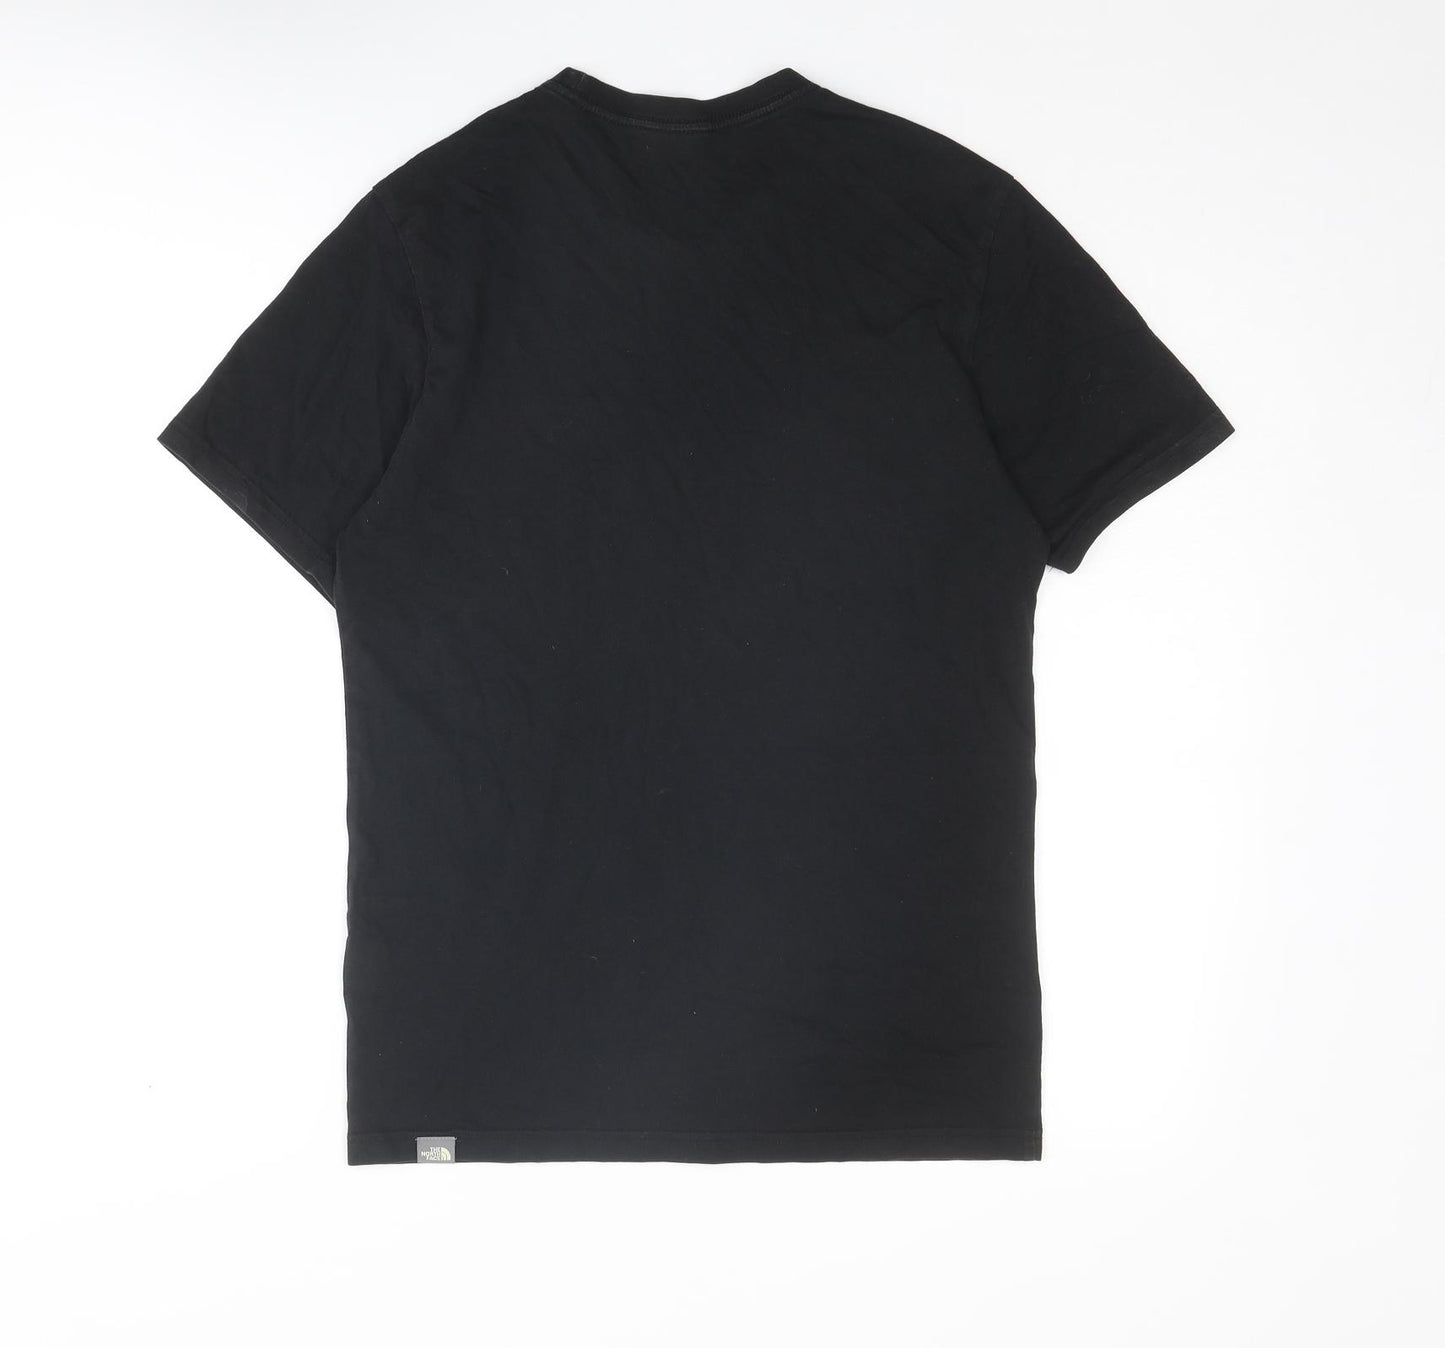 The North Face Mens Black Cotton T-Shirt Size S Crew Neck - Prague